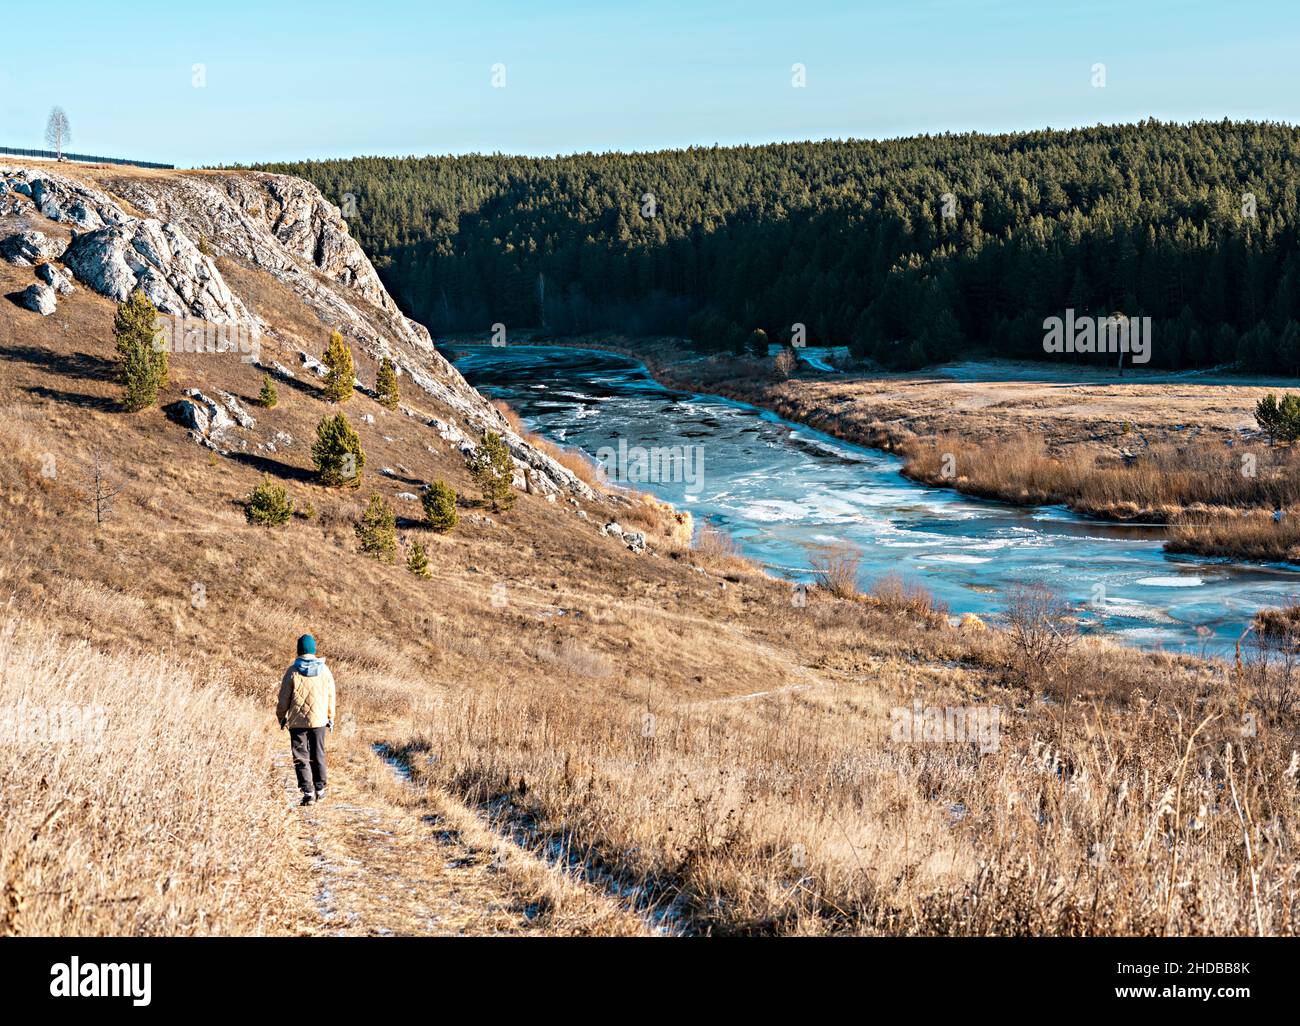 Rückansicht einer Frau in neutralen Farben Kleidung, die im Herbst auf trockenem Gras gegen Felsen und Wald am Fluss entlang läuft, Landschaft in Erdtönen, Wandern genießen Stockfoto